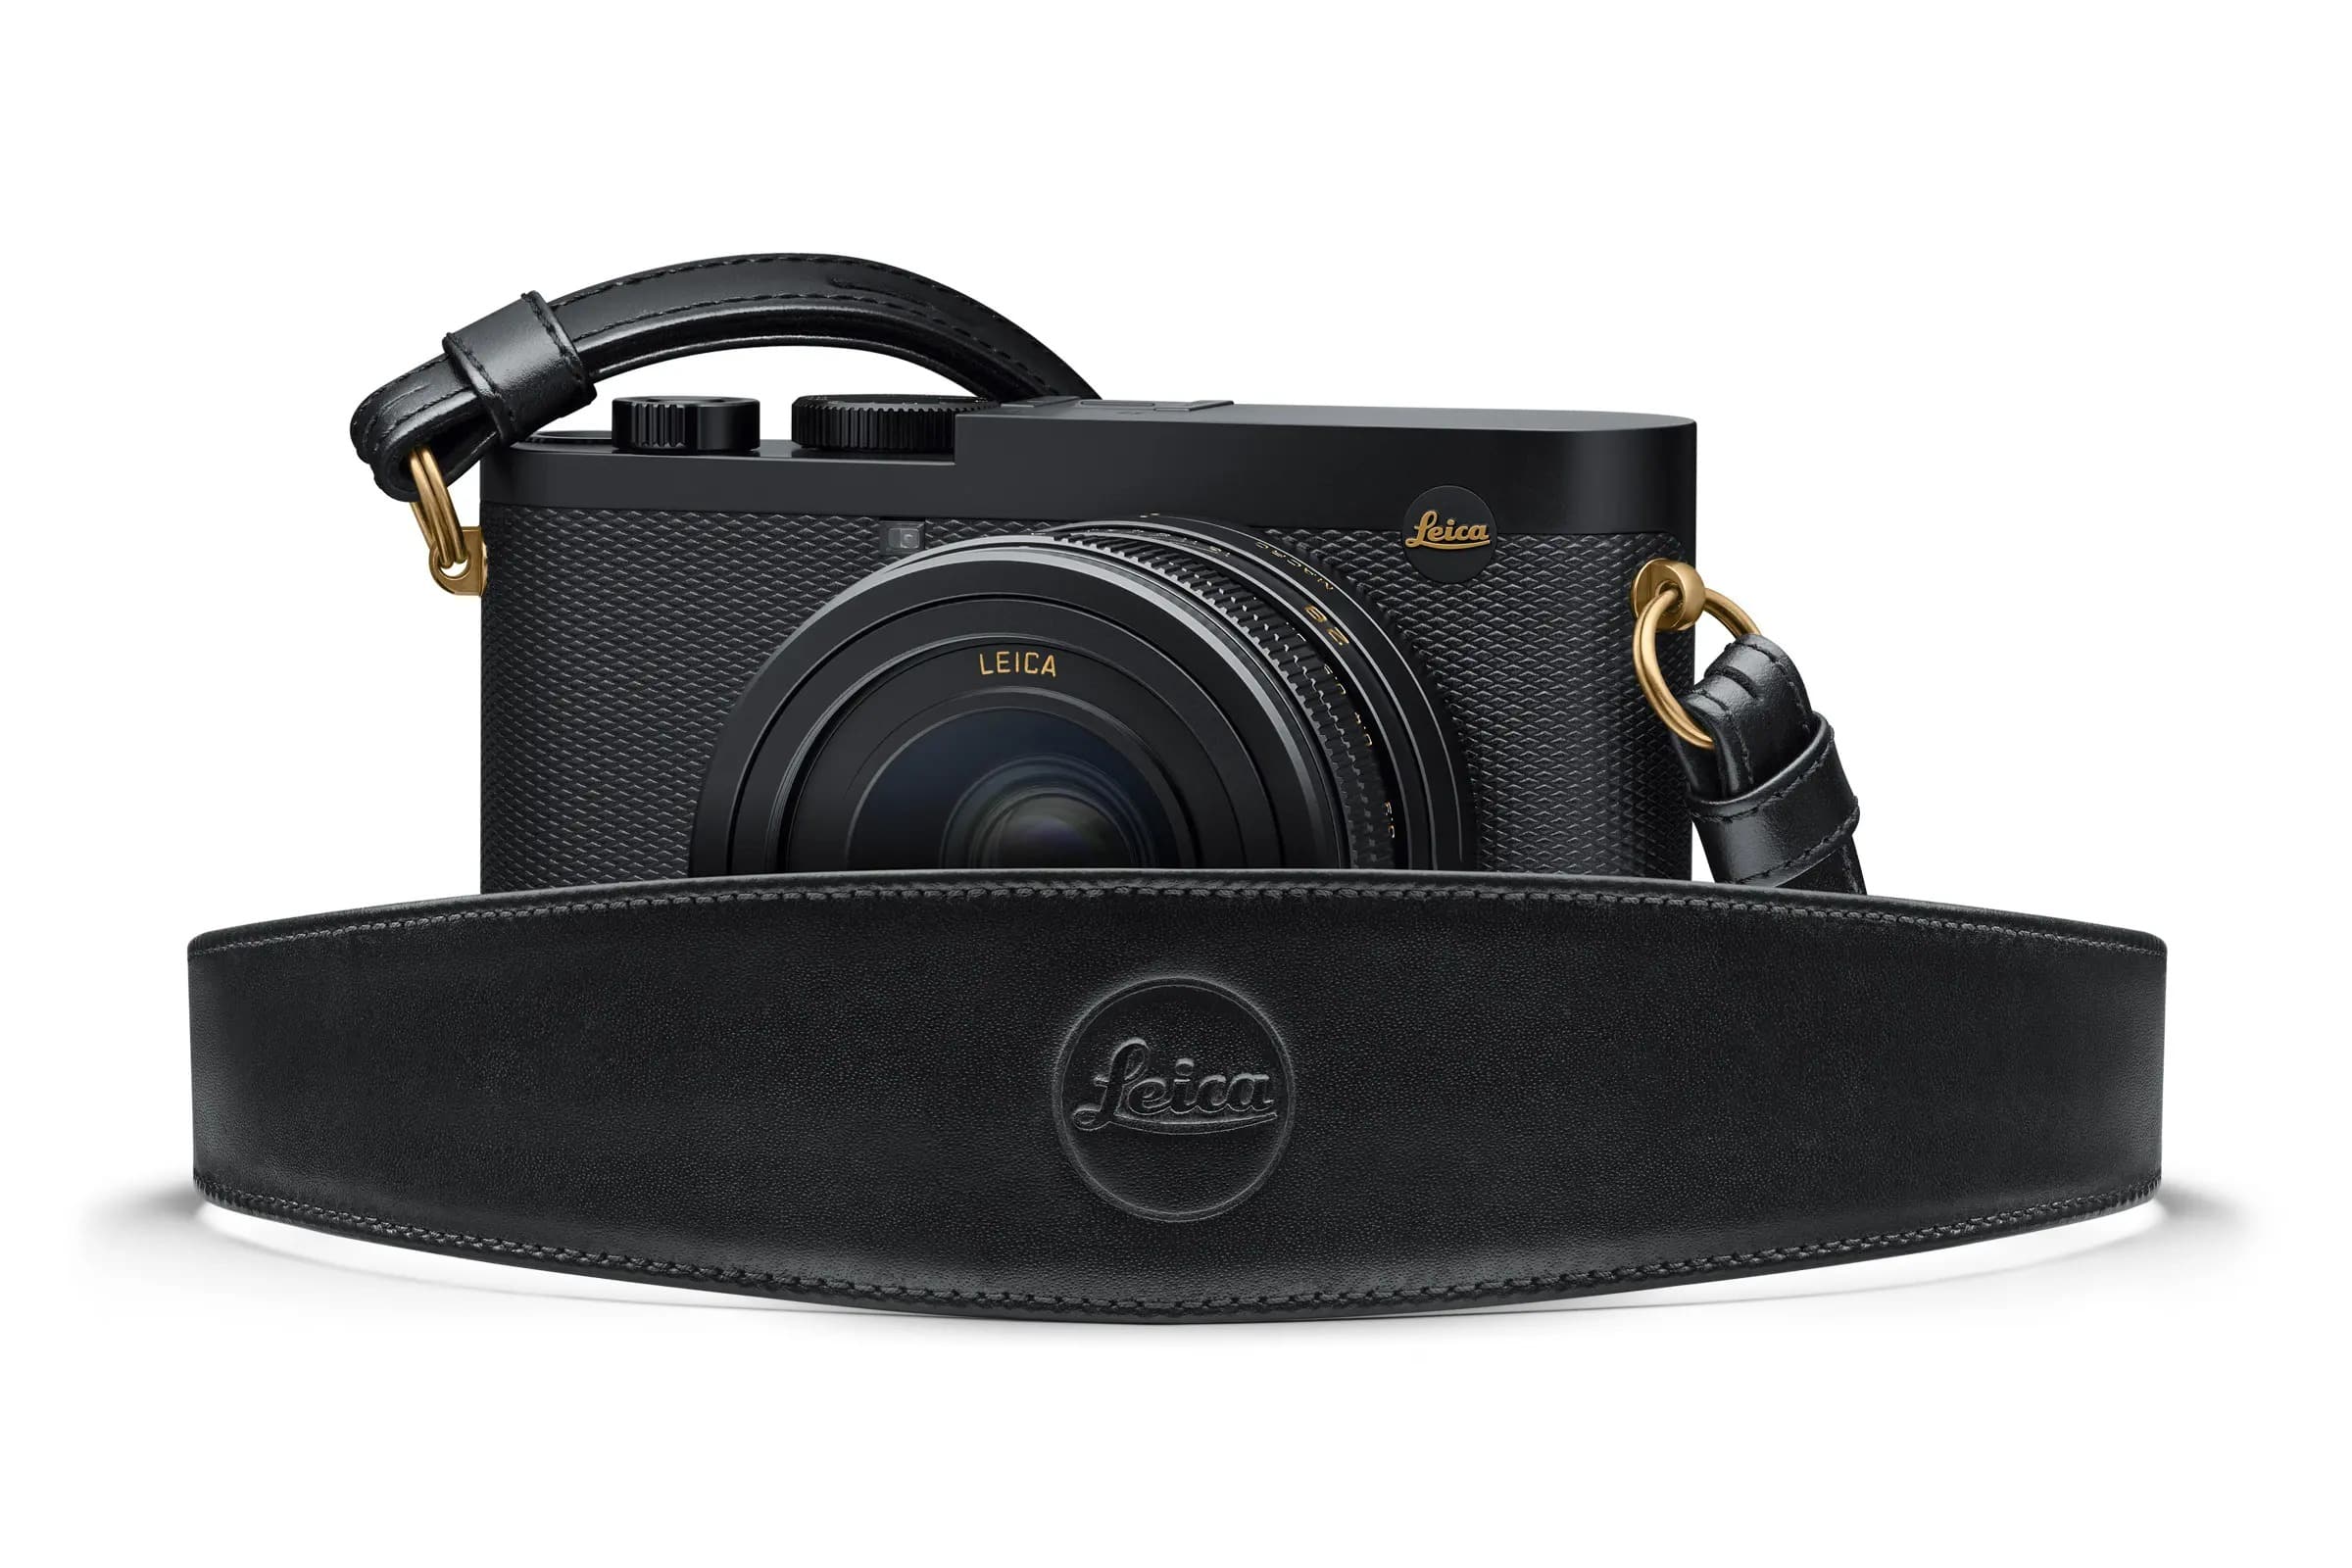 Leica ra mắt Leica Q2 bản giới hạn mới hợp tác với Daniel Craig và Greg Williams